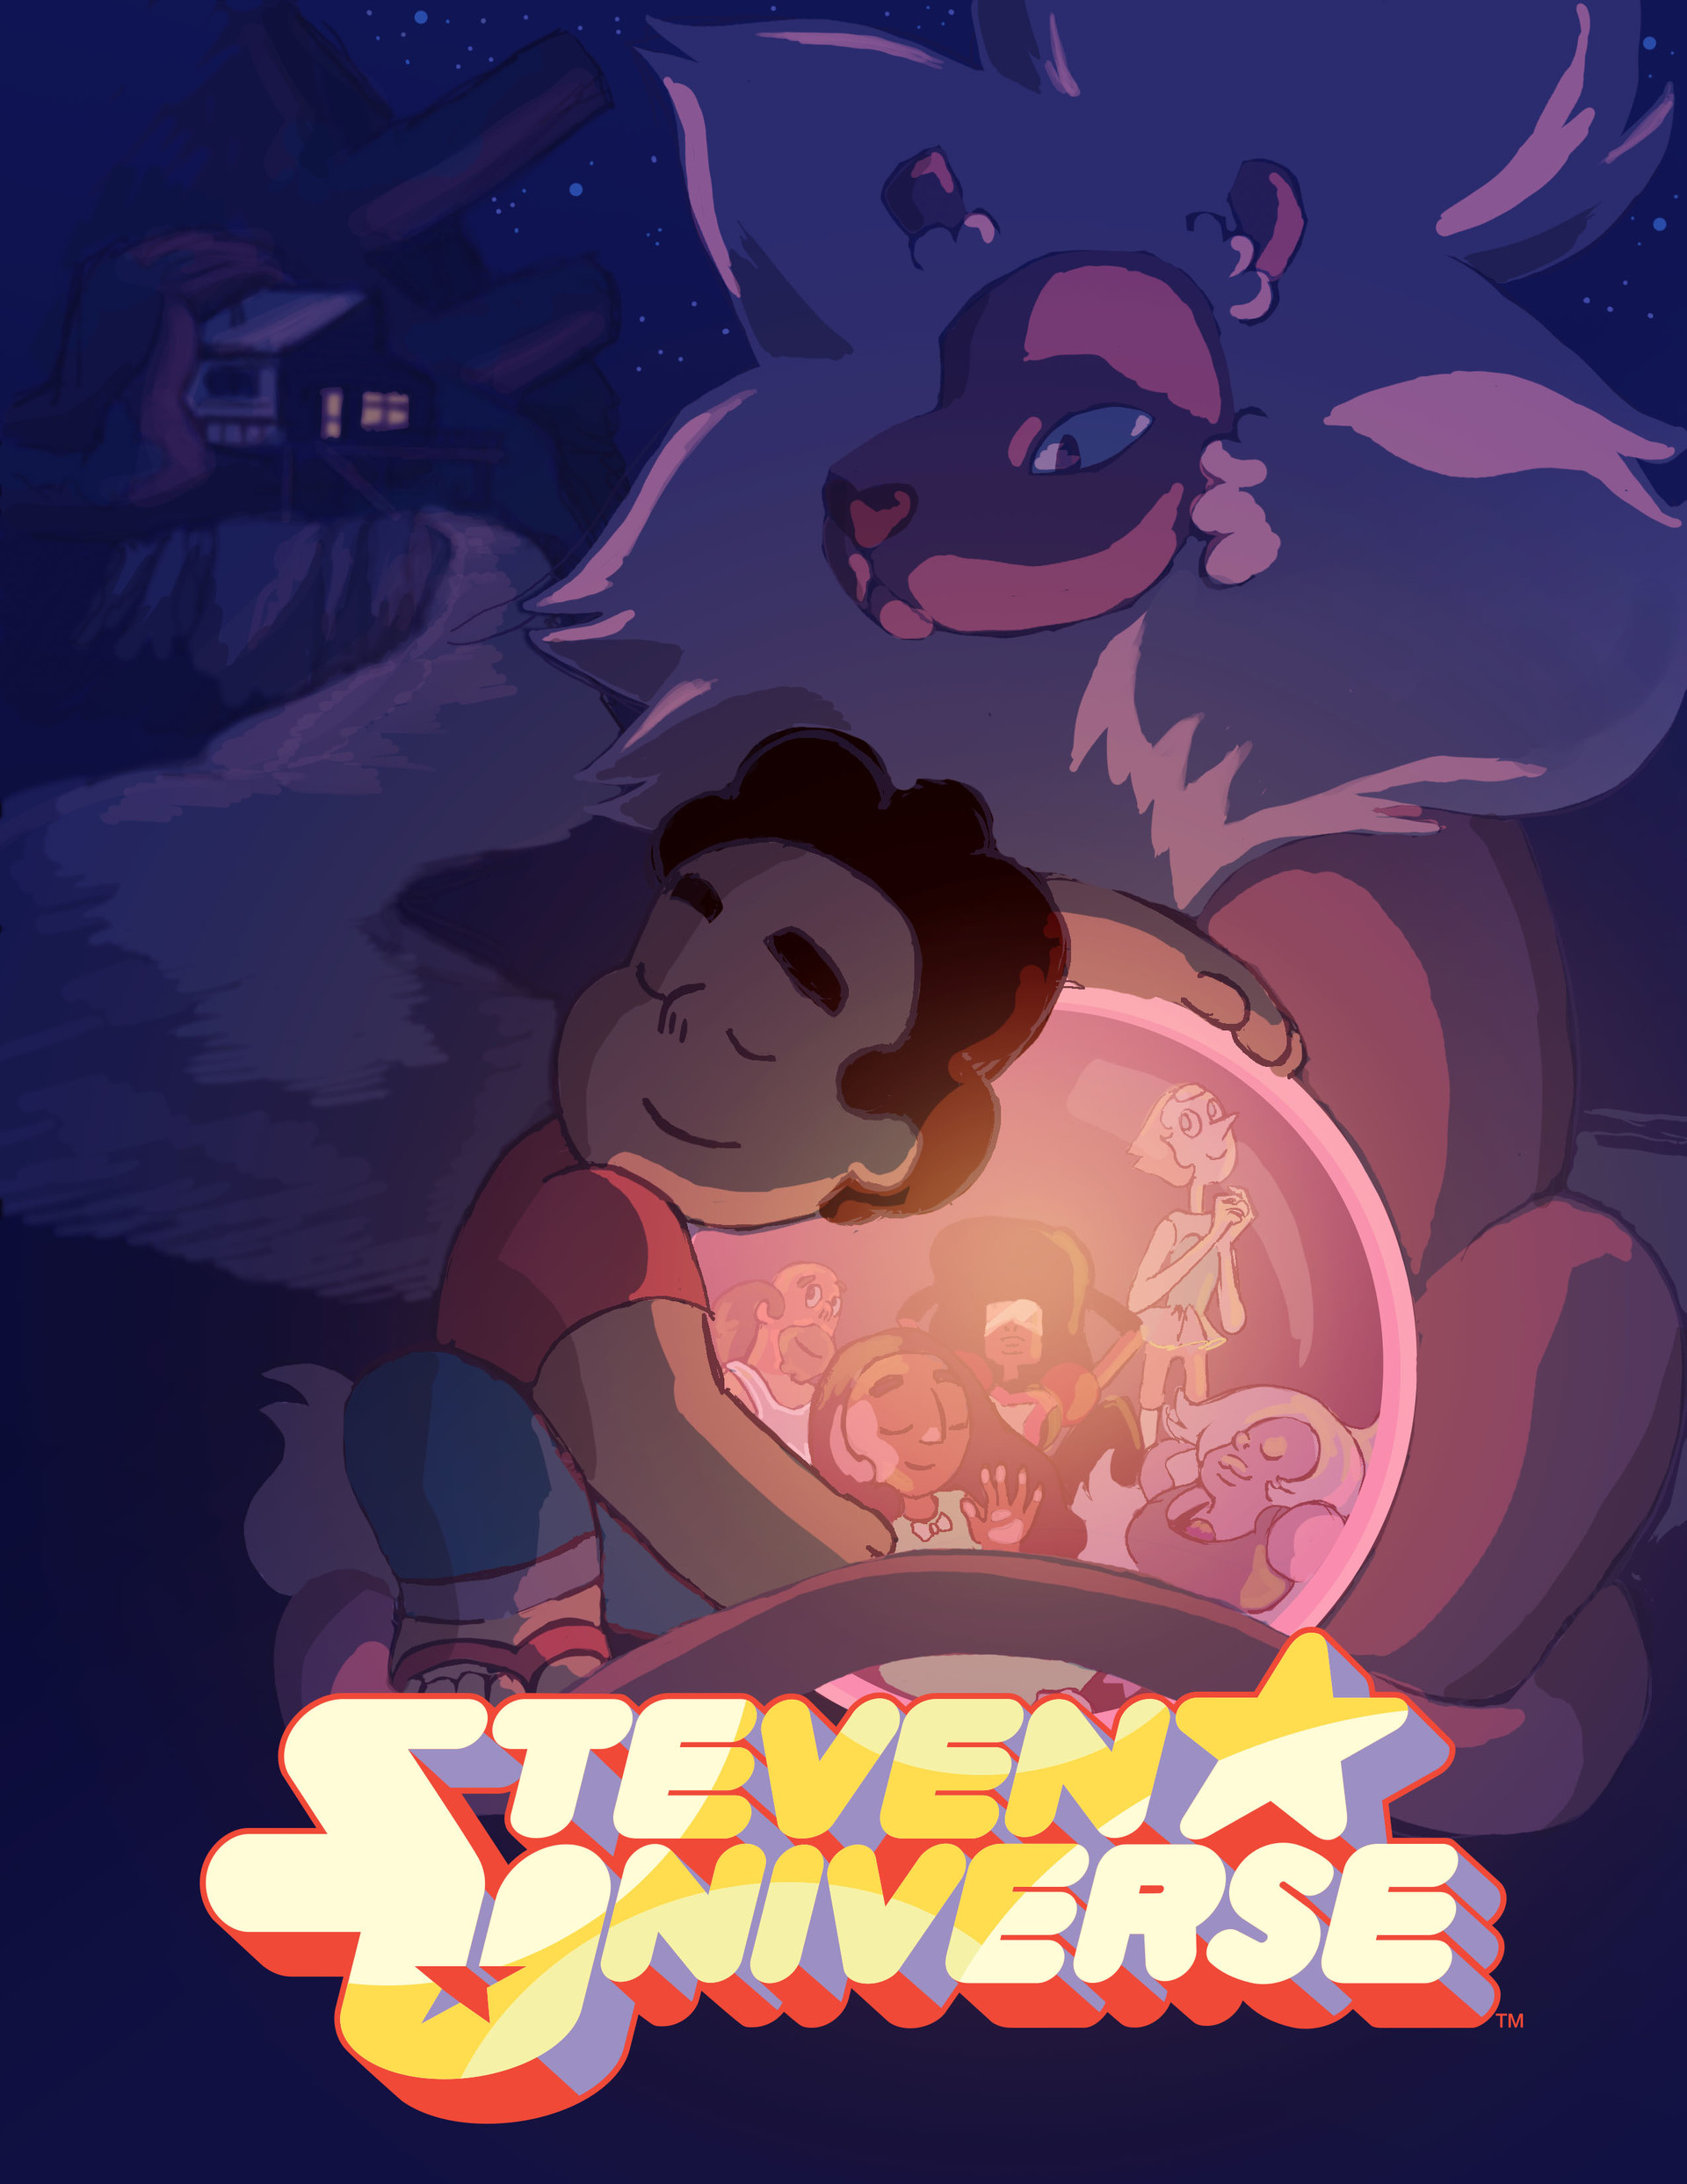 ArtStation - Steven Universe Poster, Zachary Gillett